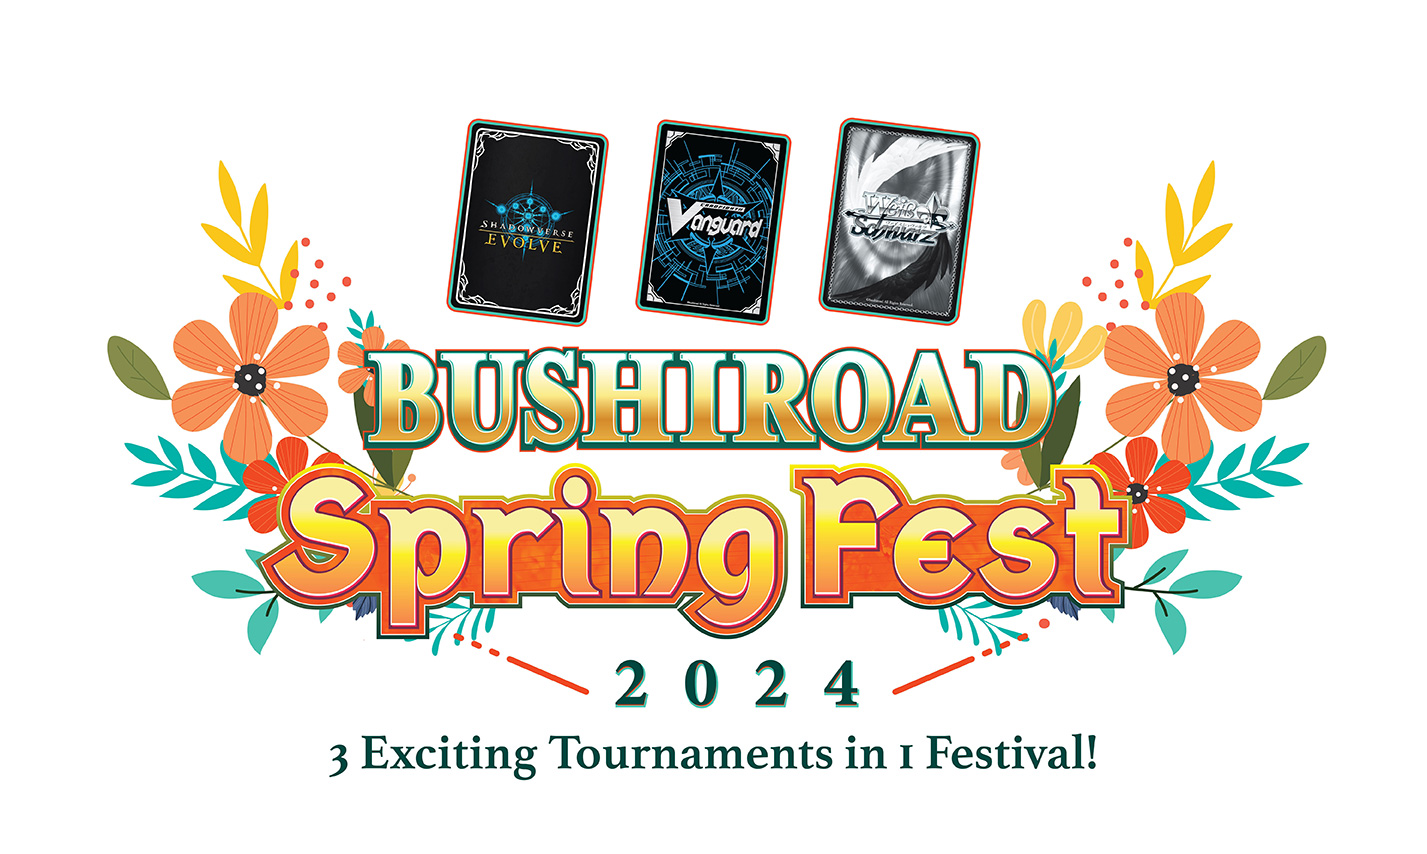 Bushiroad Spring Fest